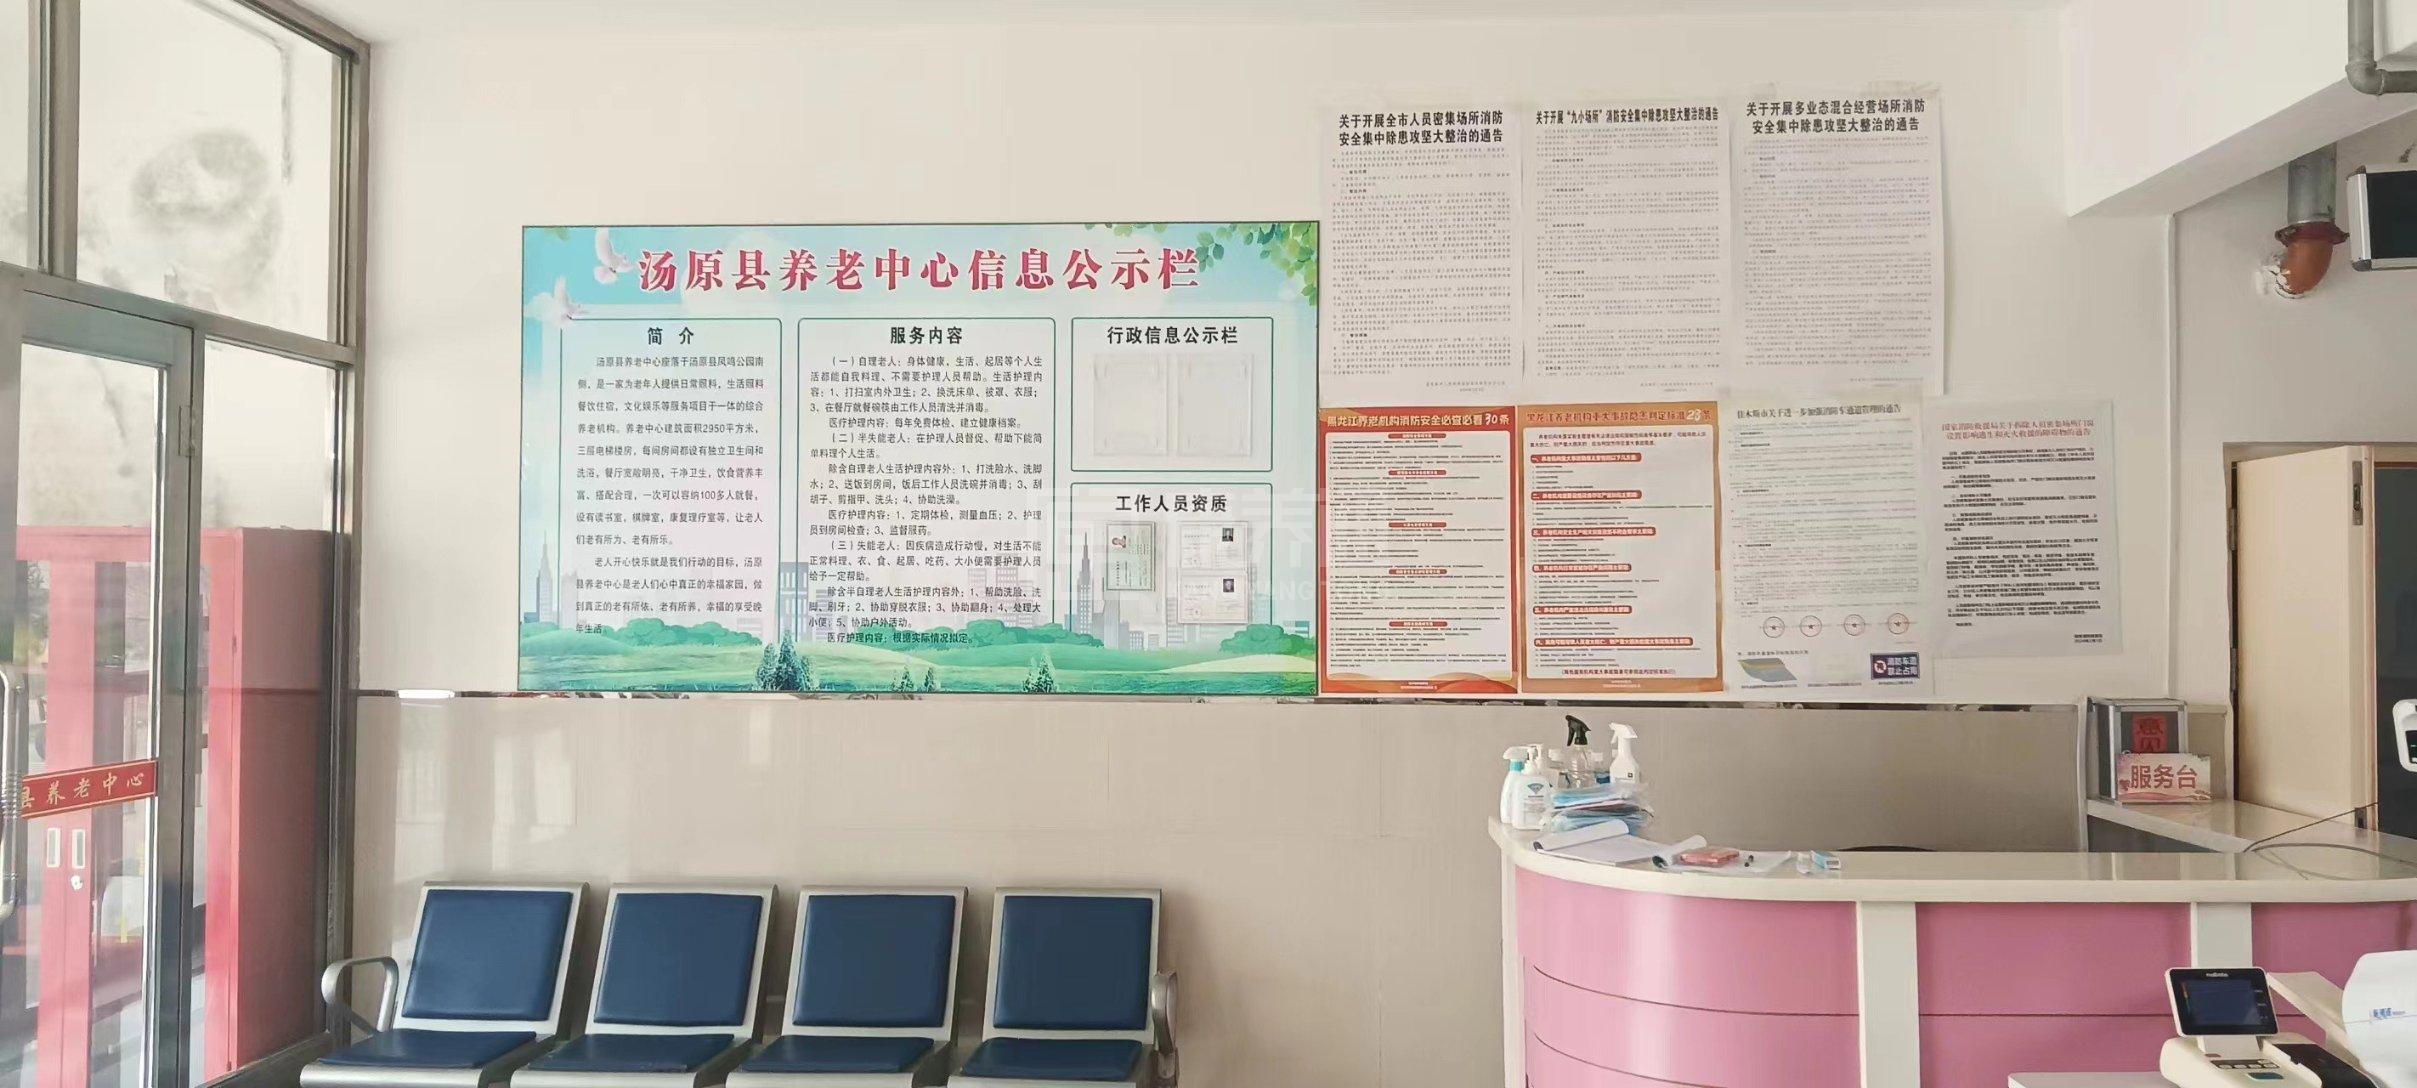 汤原县养老中心服务项目图2亦动亦静、亦新亦旧